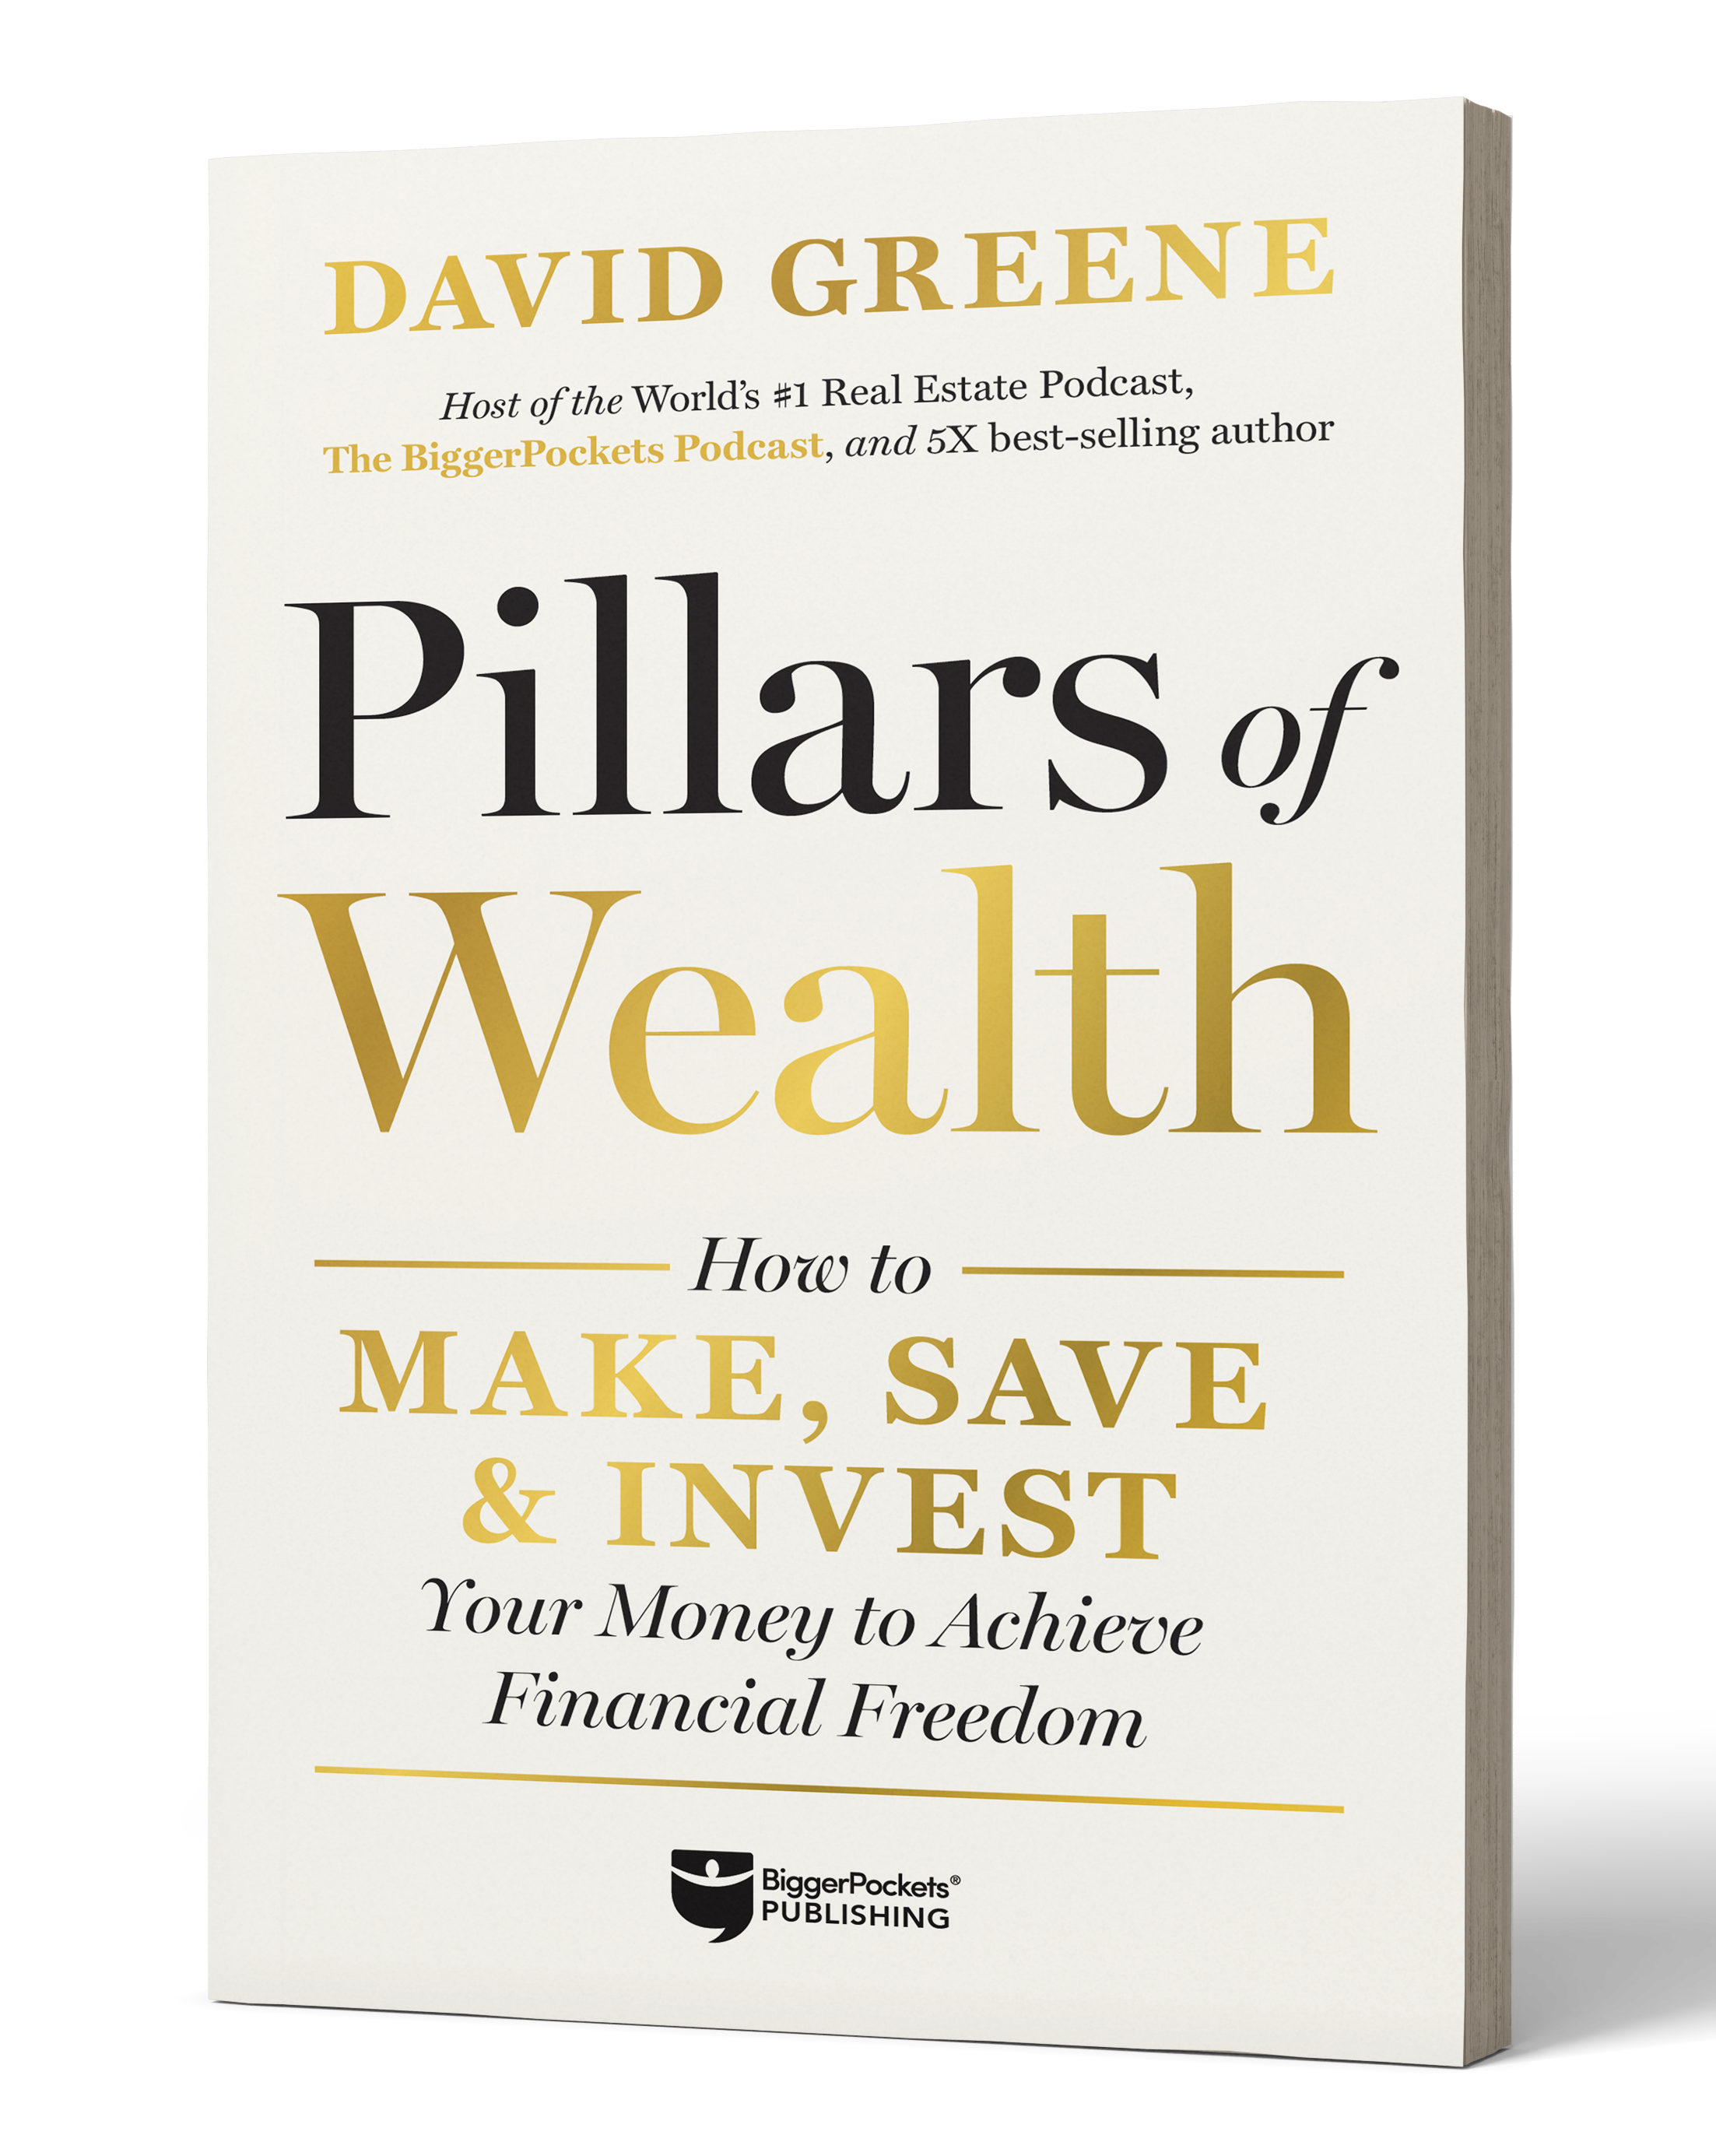 Anteprima: Uno sguardo al nuovo libro di David Greene “Pillars of Wealth”